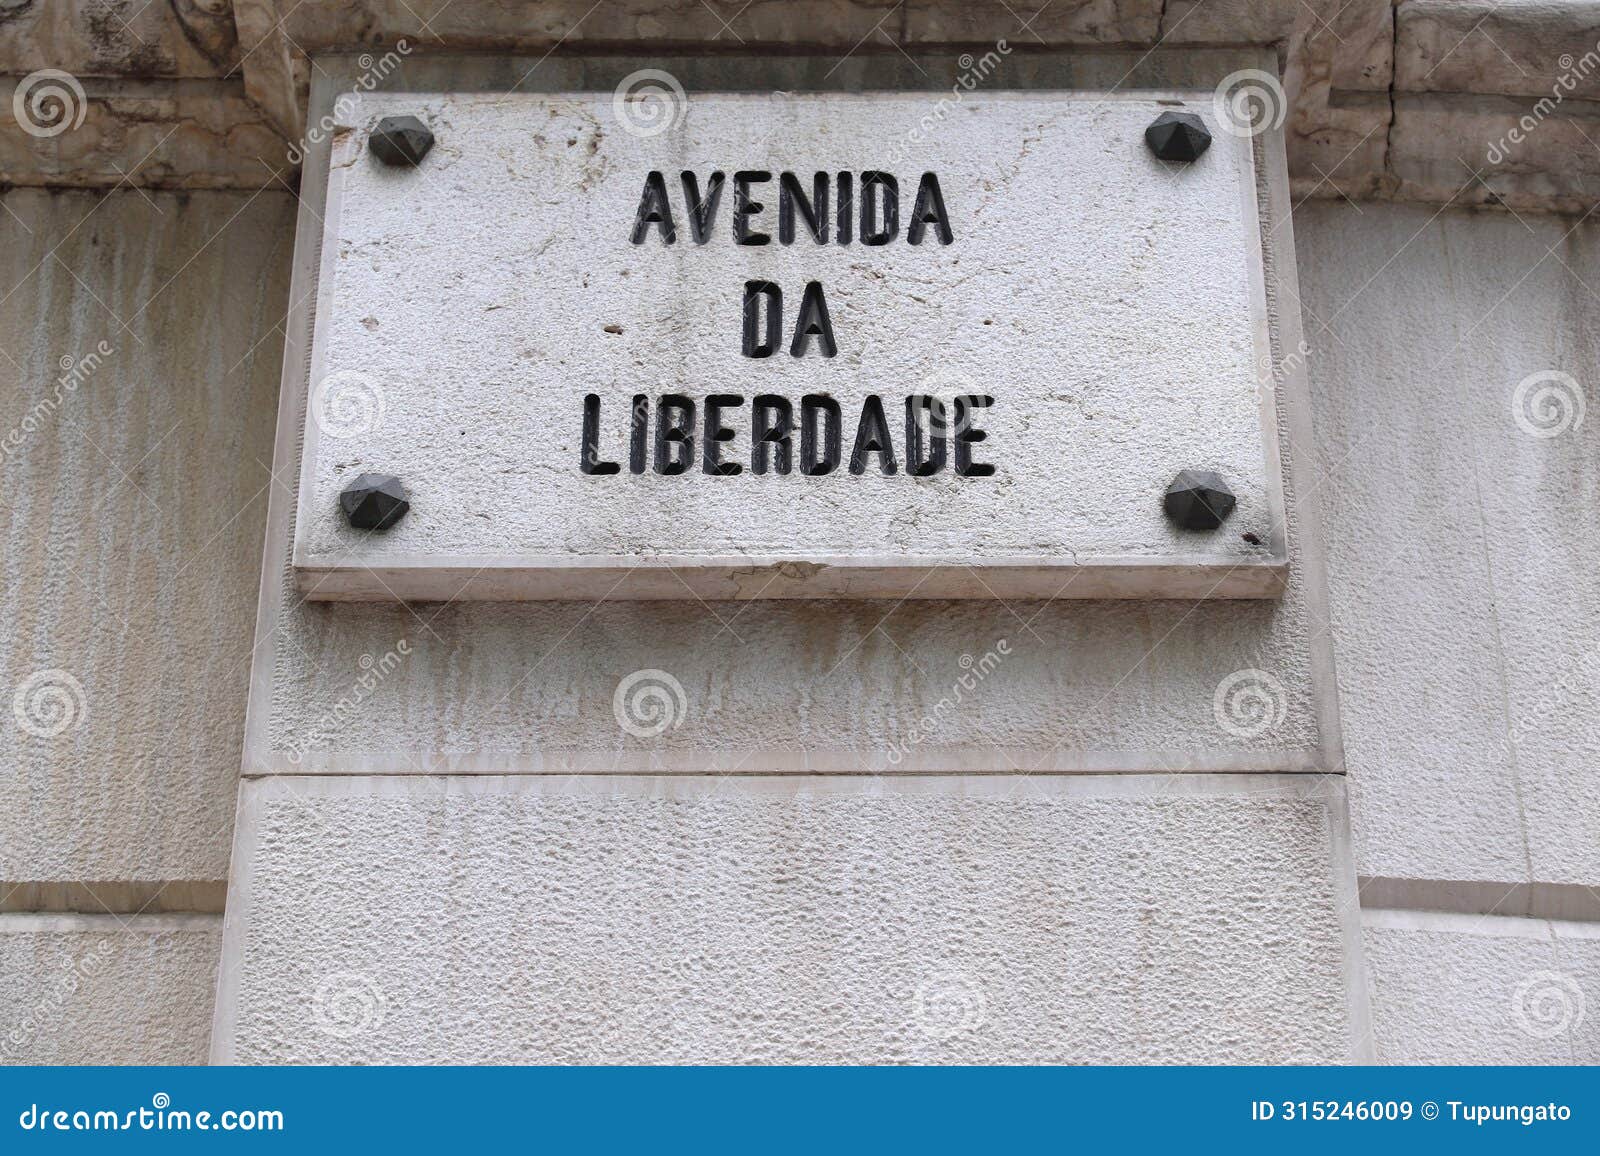 avenida da liberdade street in lisbon